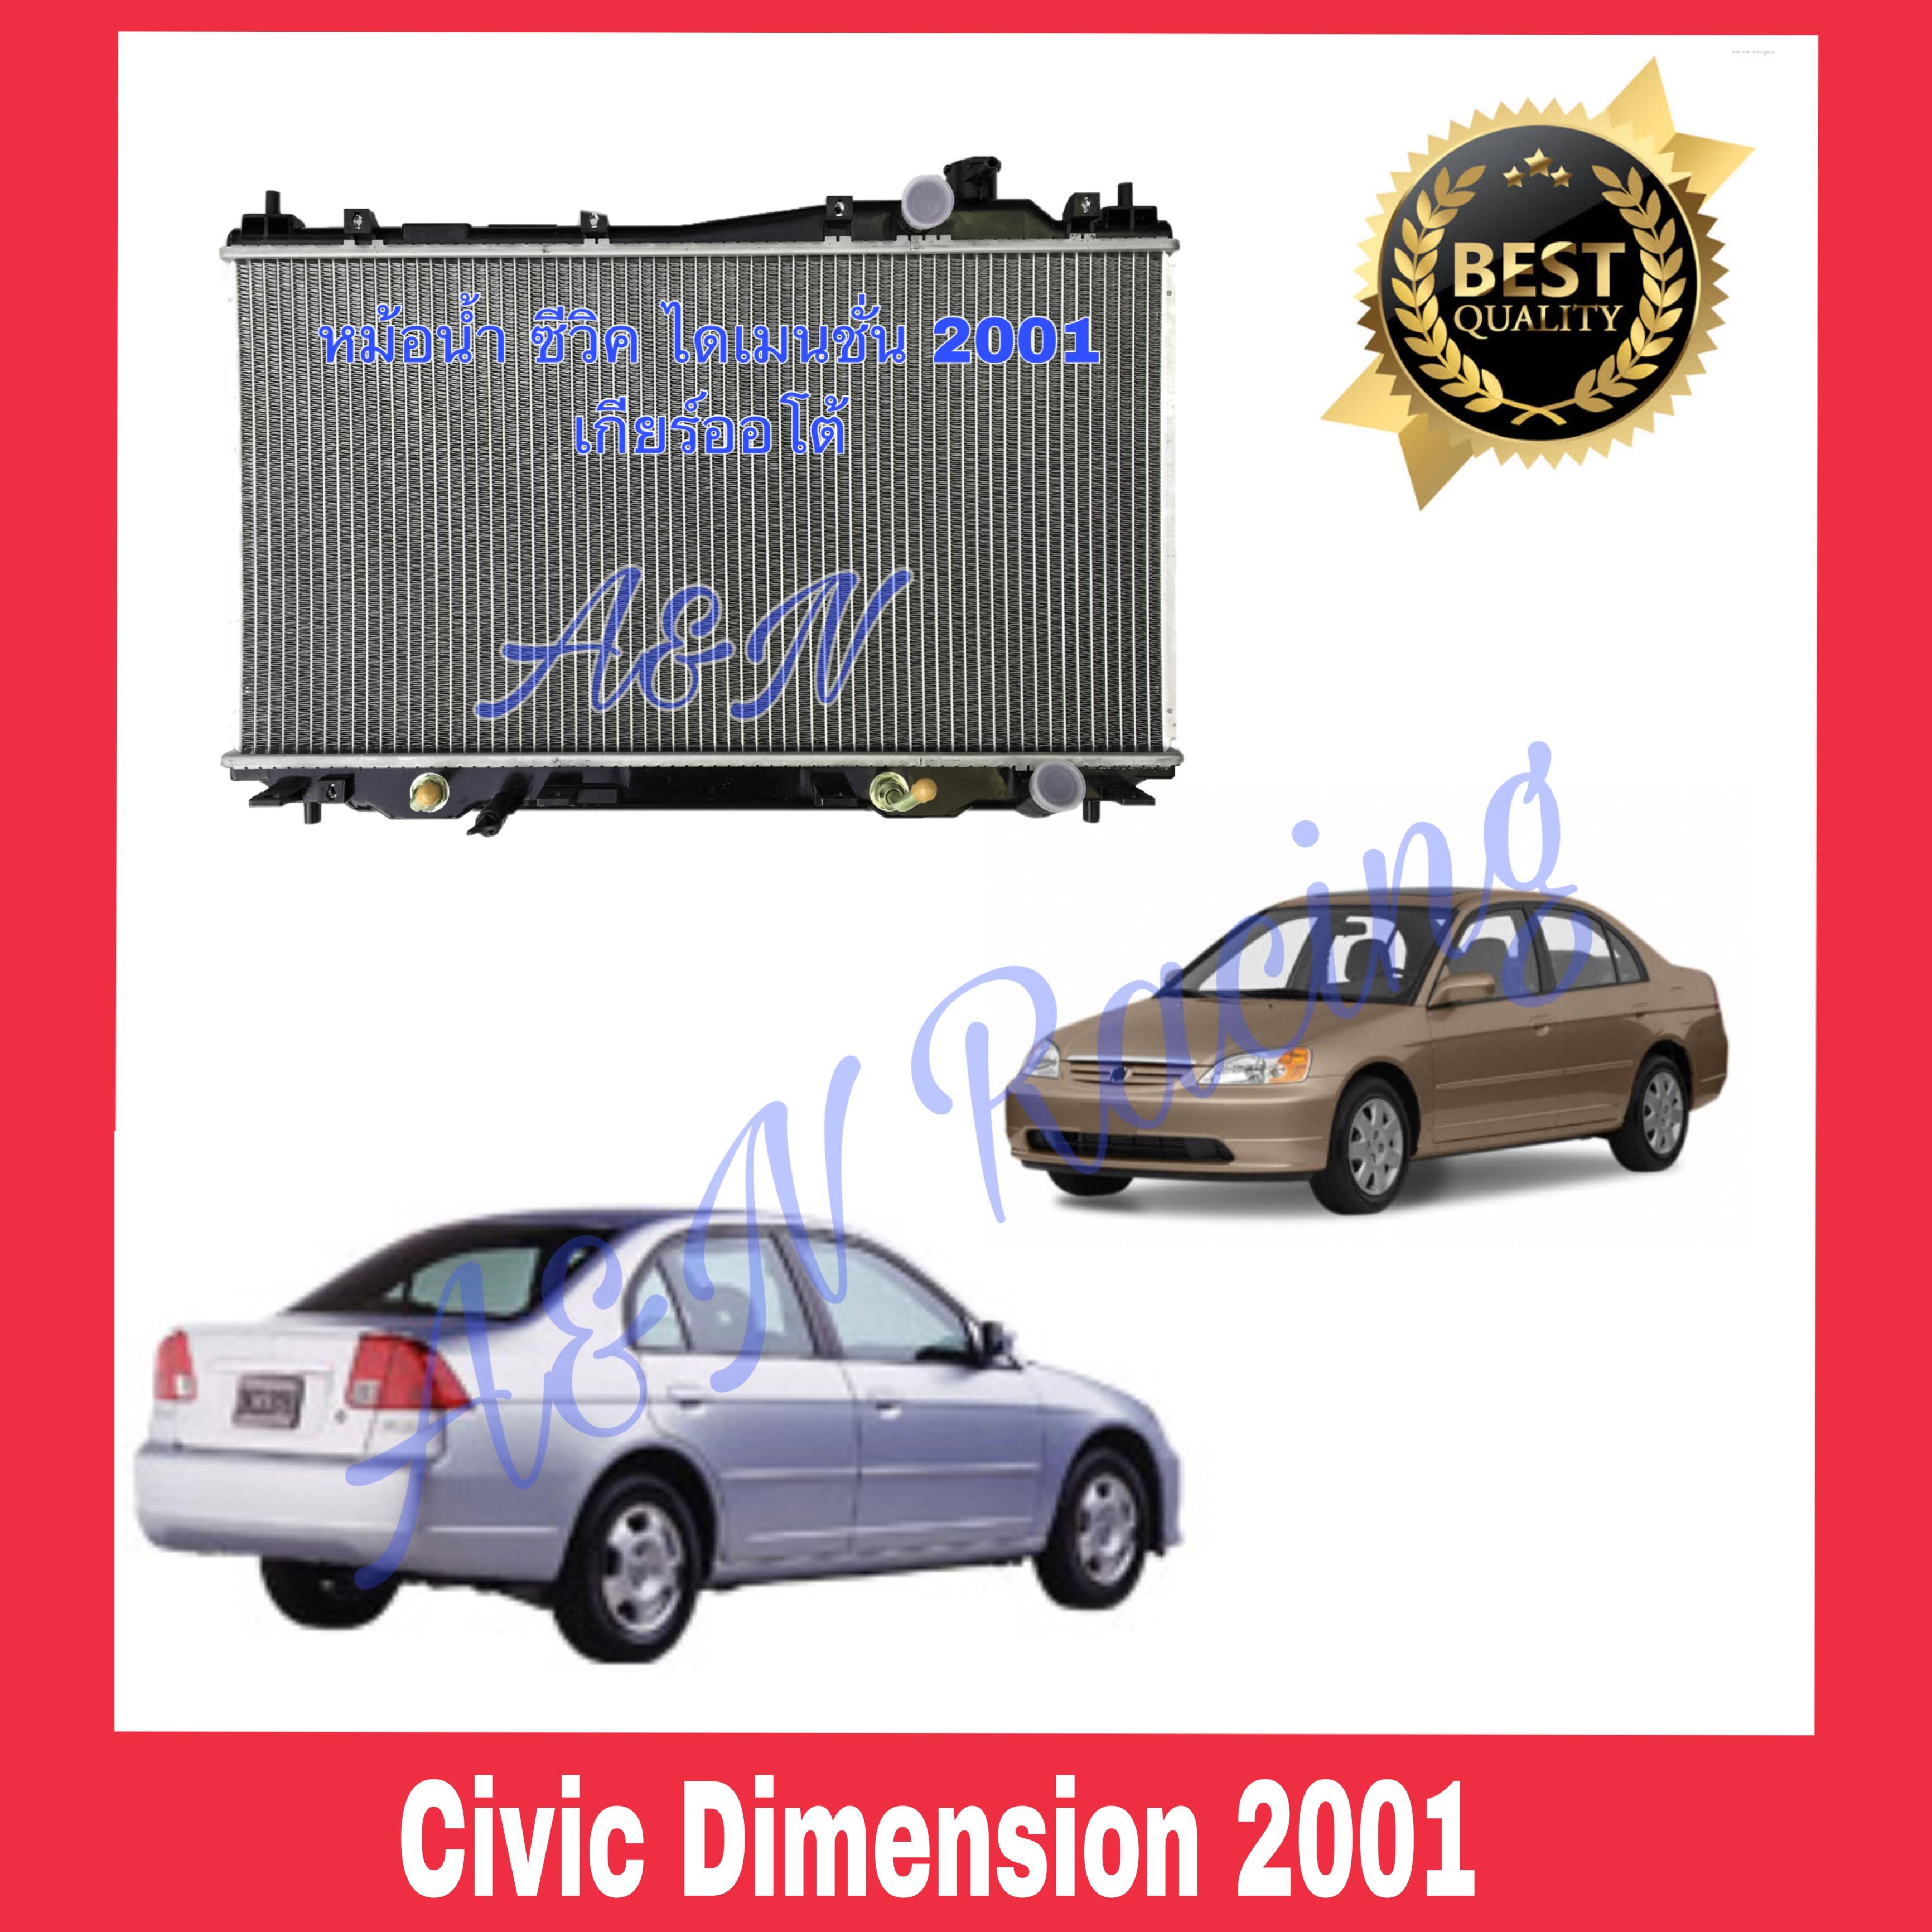 หม้อน้ำ รถยนต์ แถมฝาหม้อน้ำ!!! ตรงรุ่น ฮอนด้า ซีวิค ไดเมนชั่น ปี 2001-2005 เครื่อง 1.7 Honda Civic Dimension ES 001079